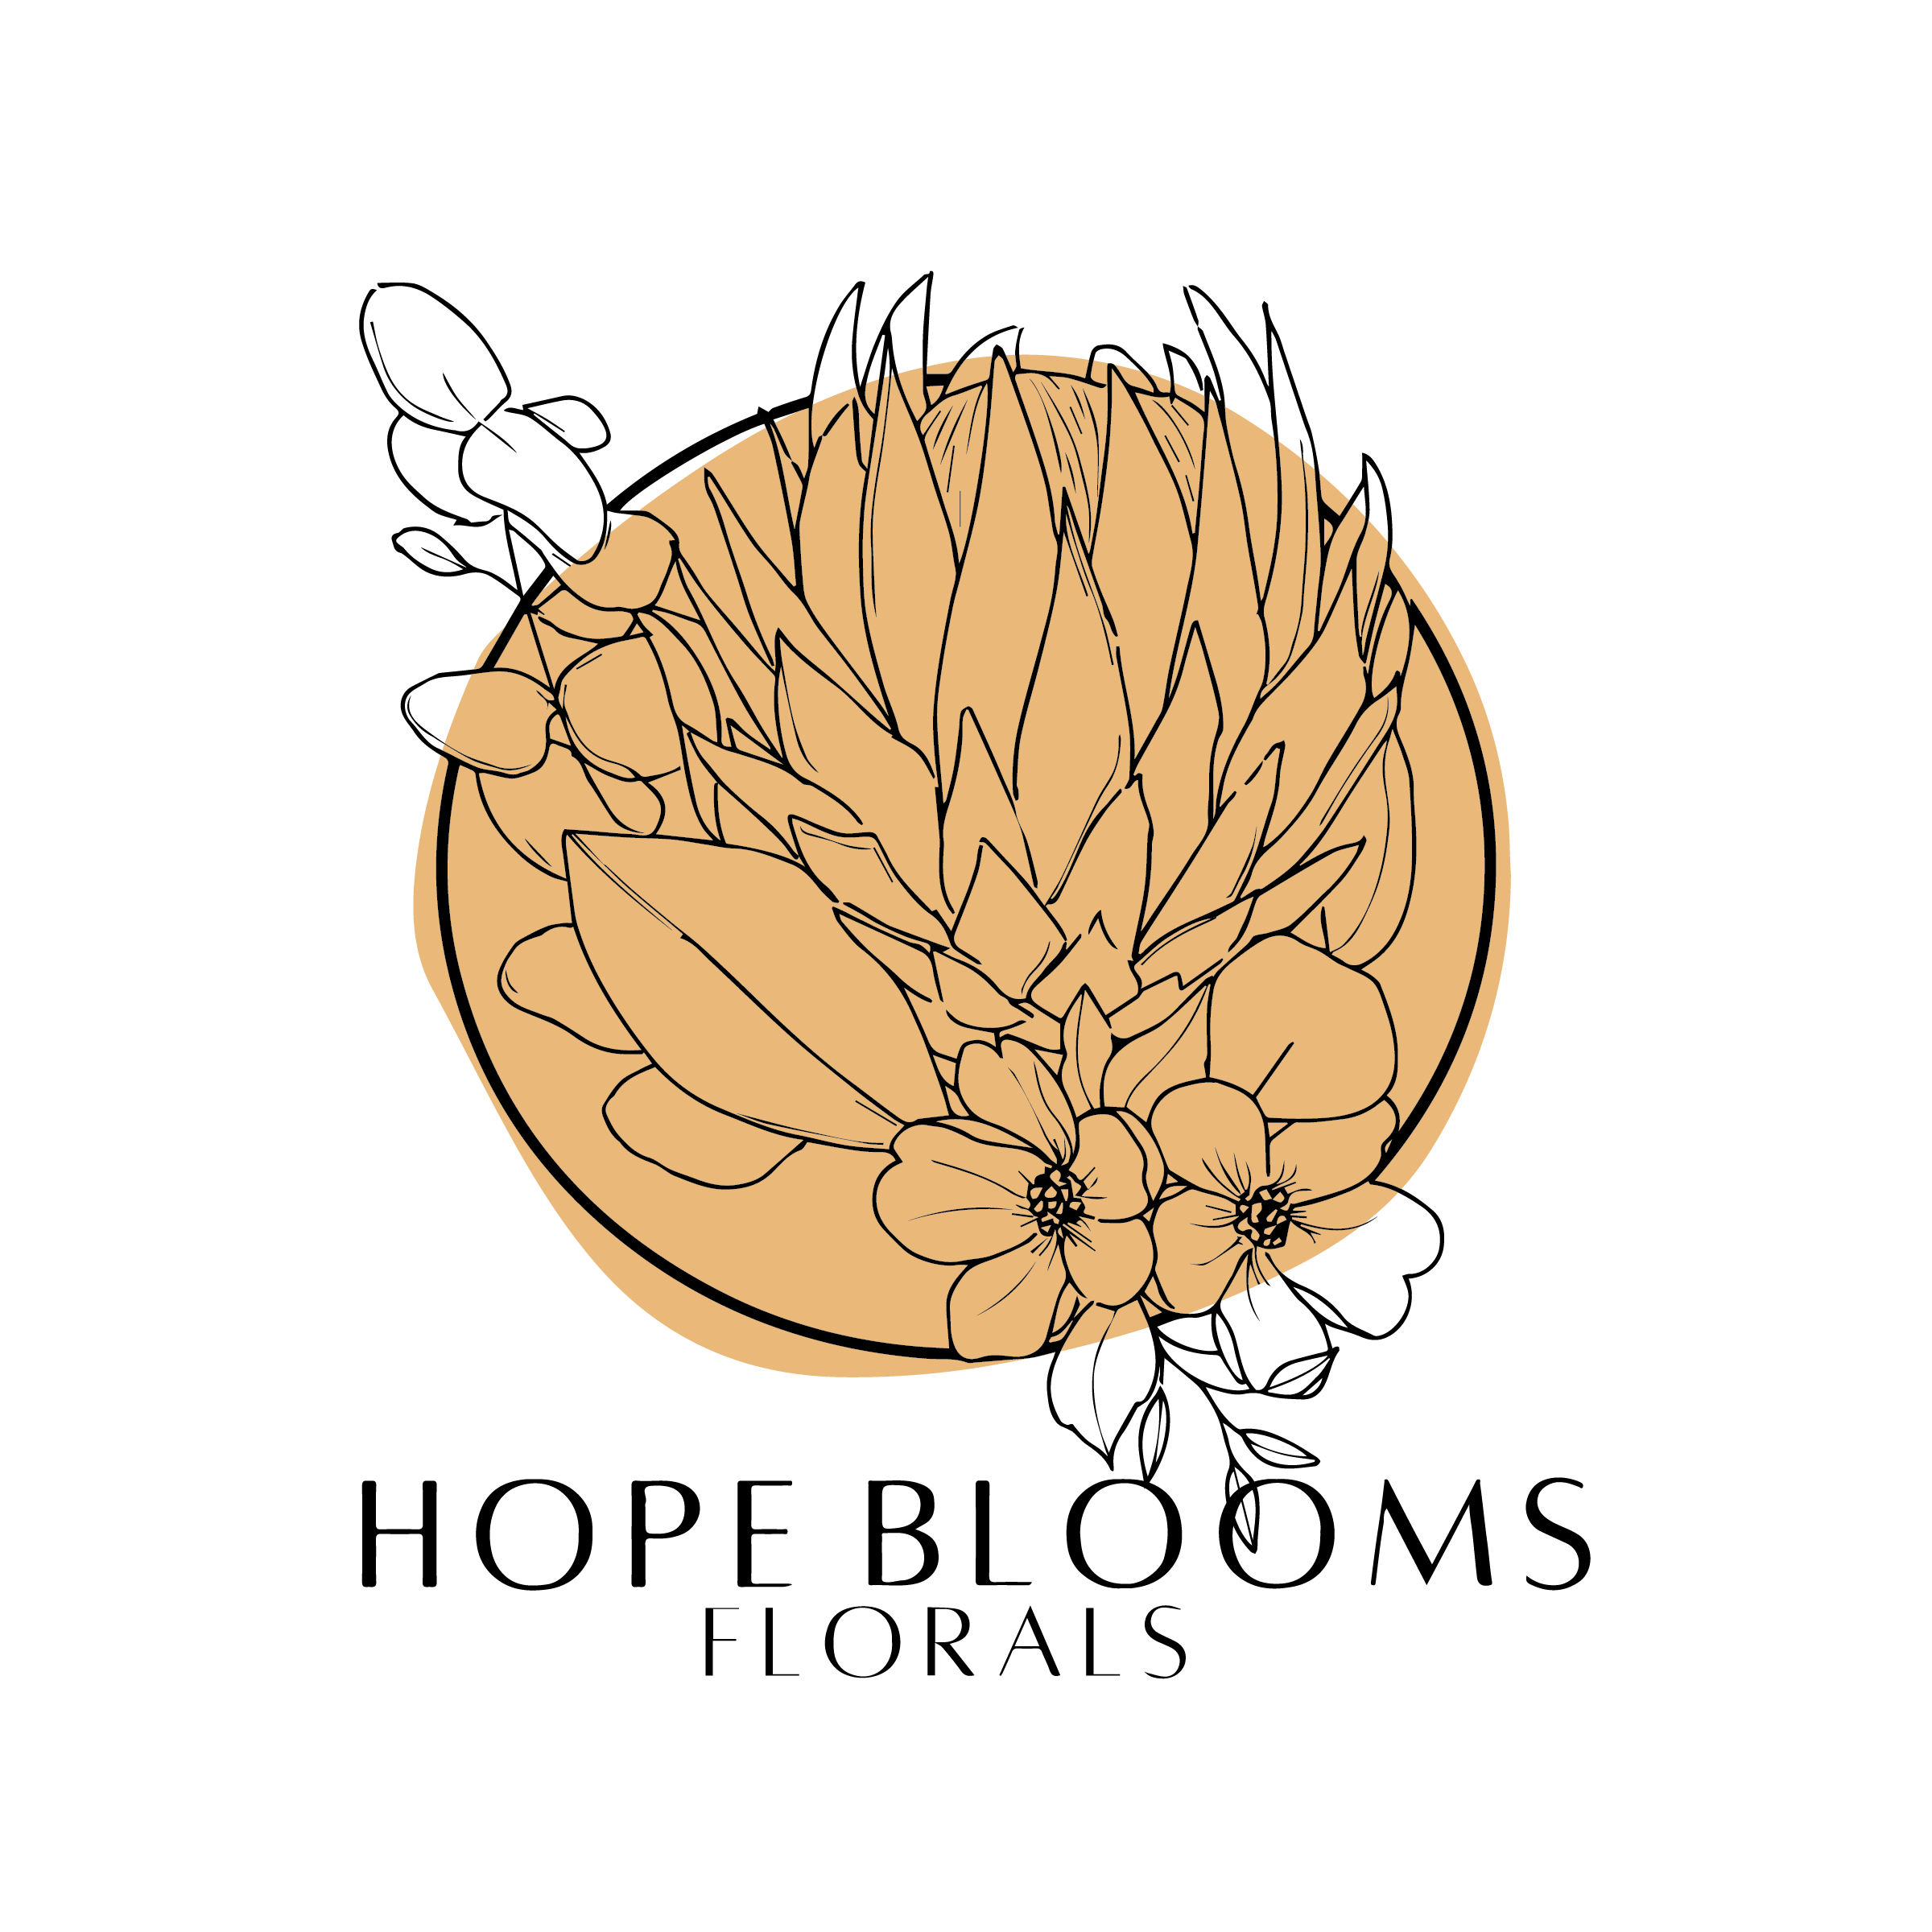 HOPE BLOOMS